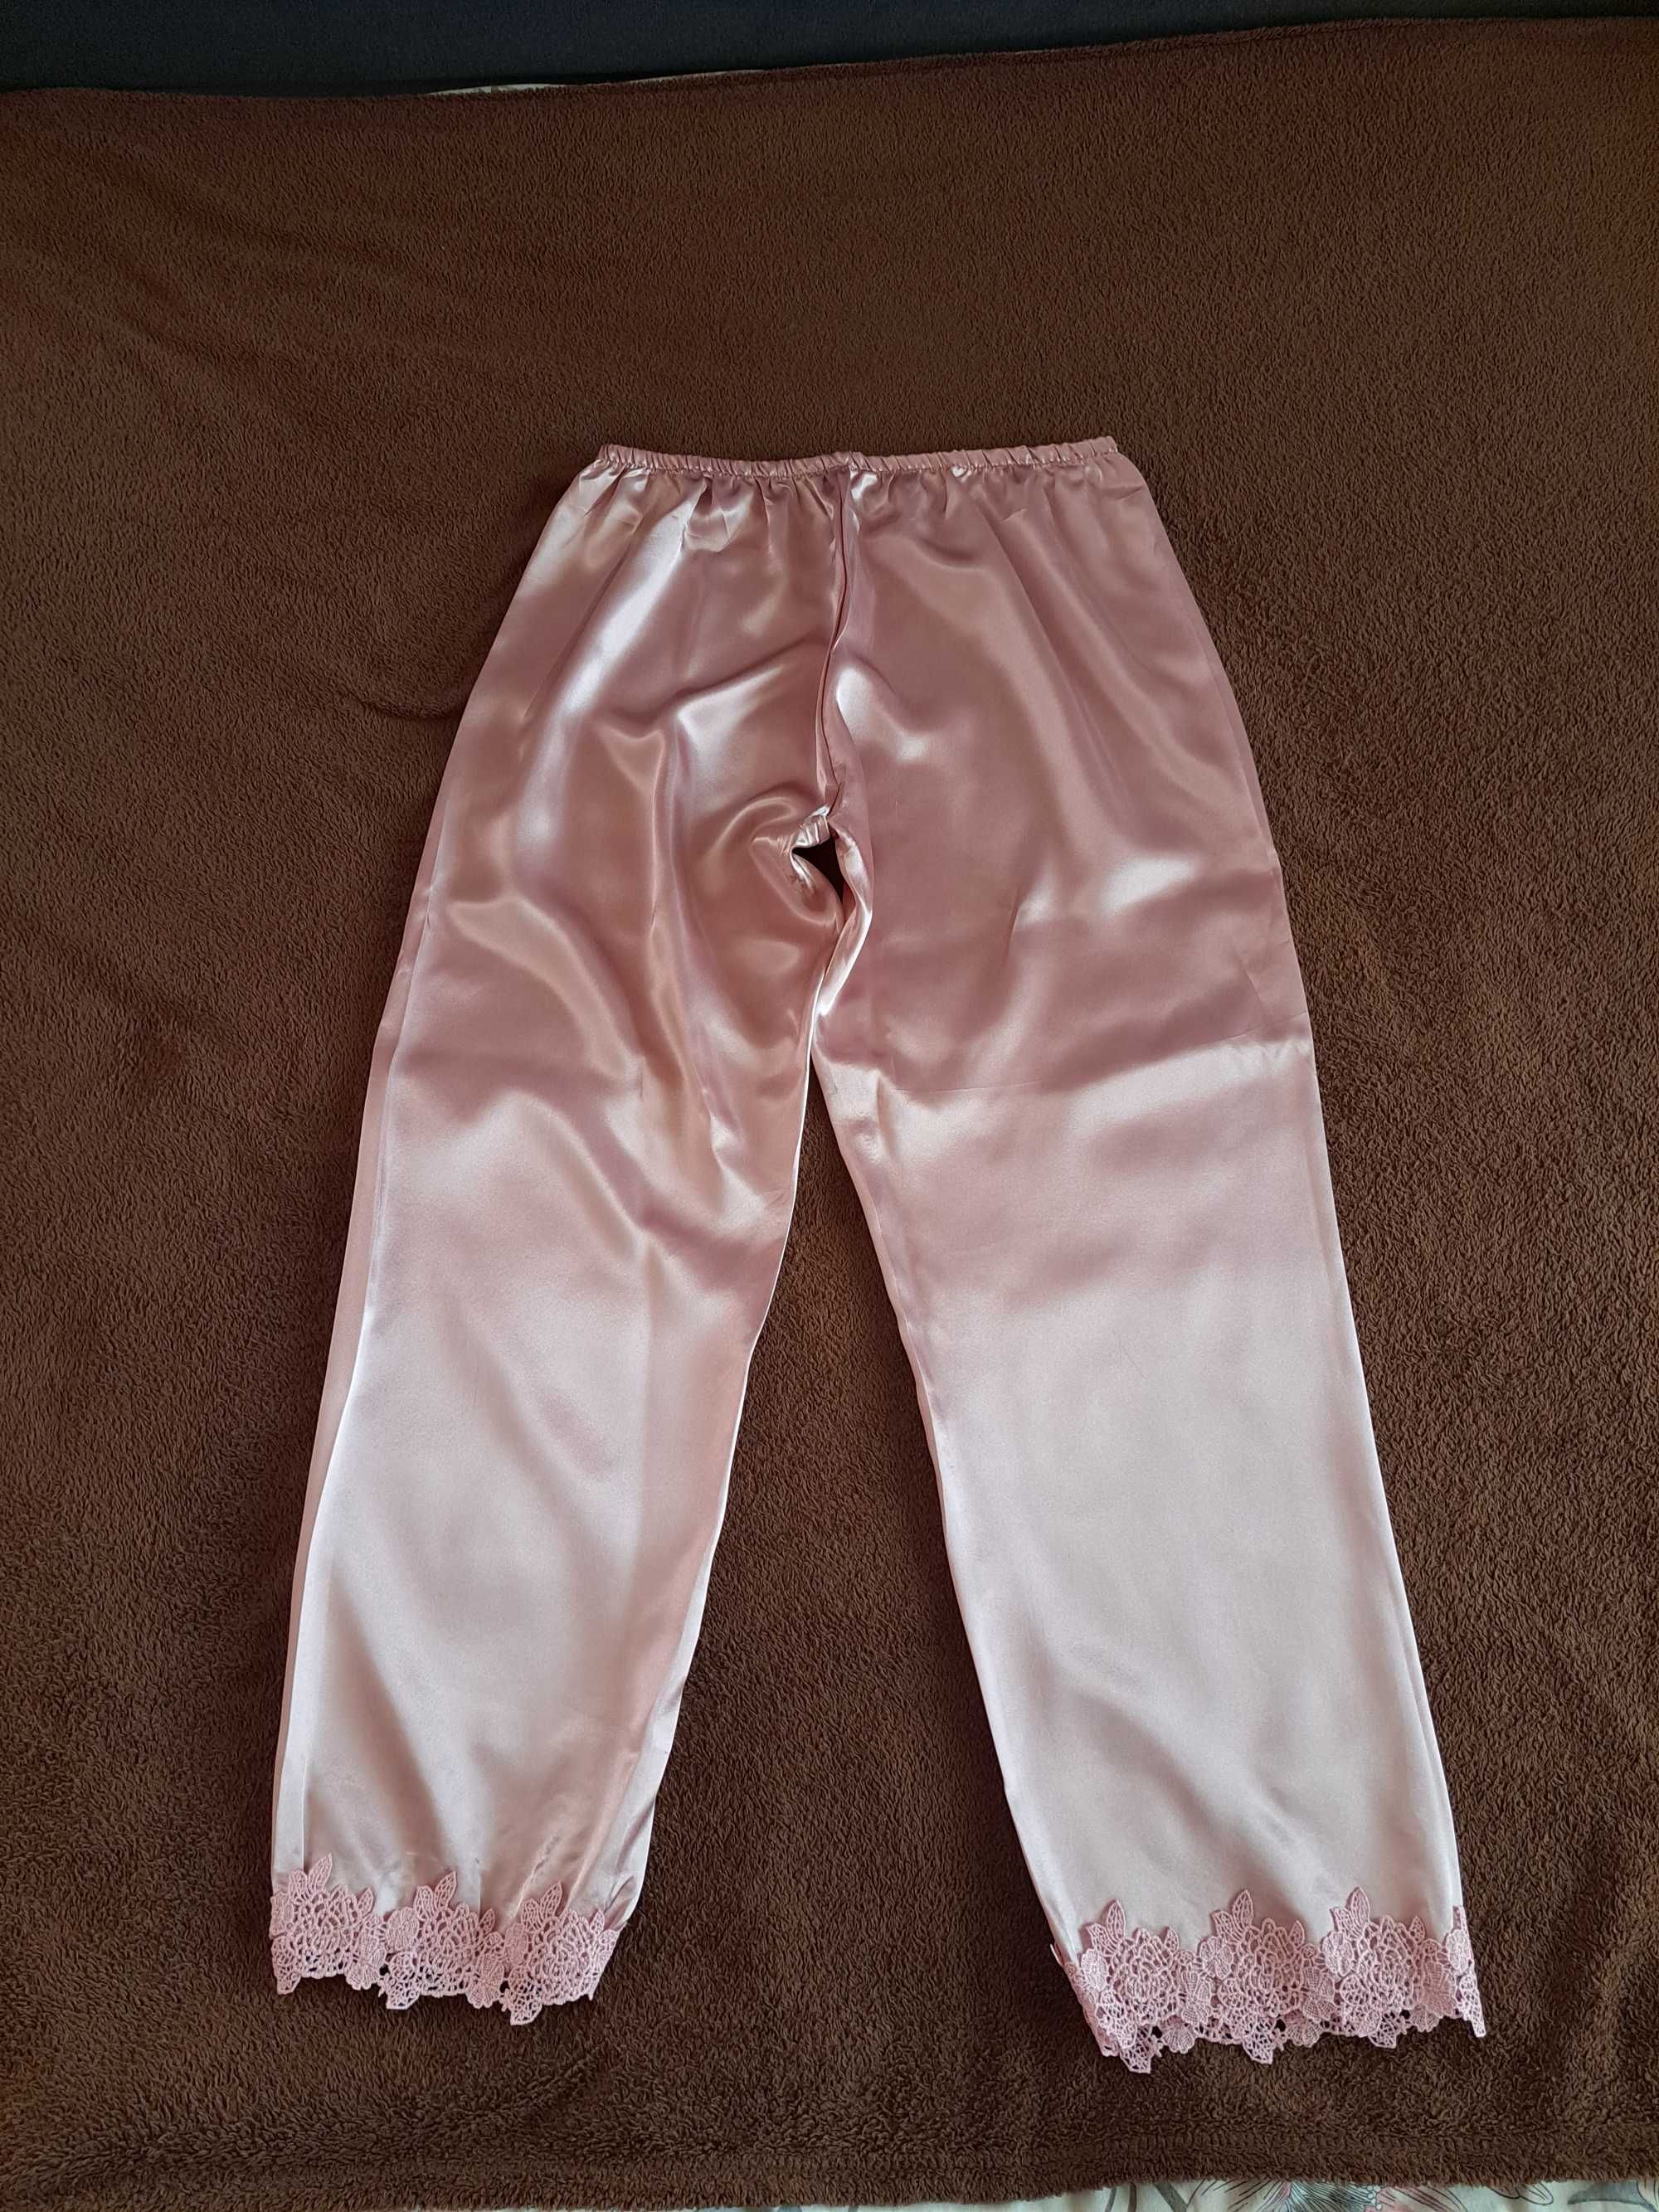 Піжама жіноча 3 од., рожевого кольору, розмір L. НОВА!